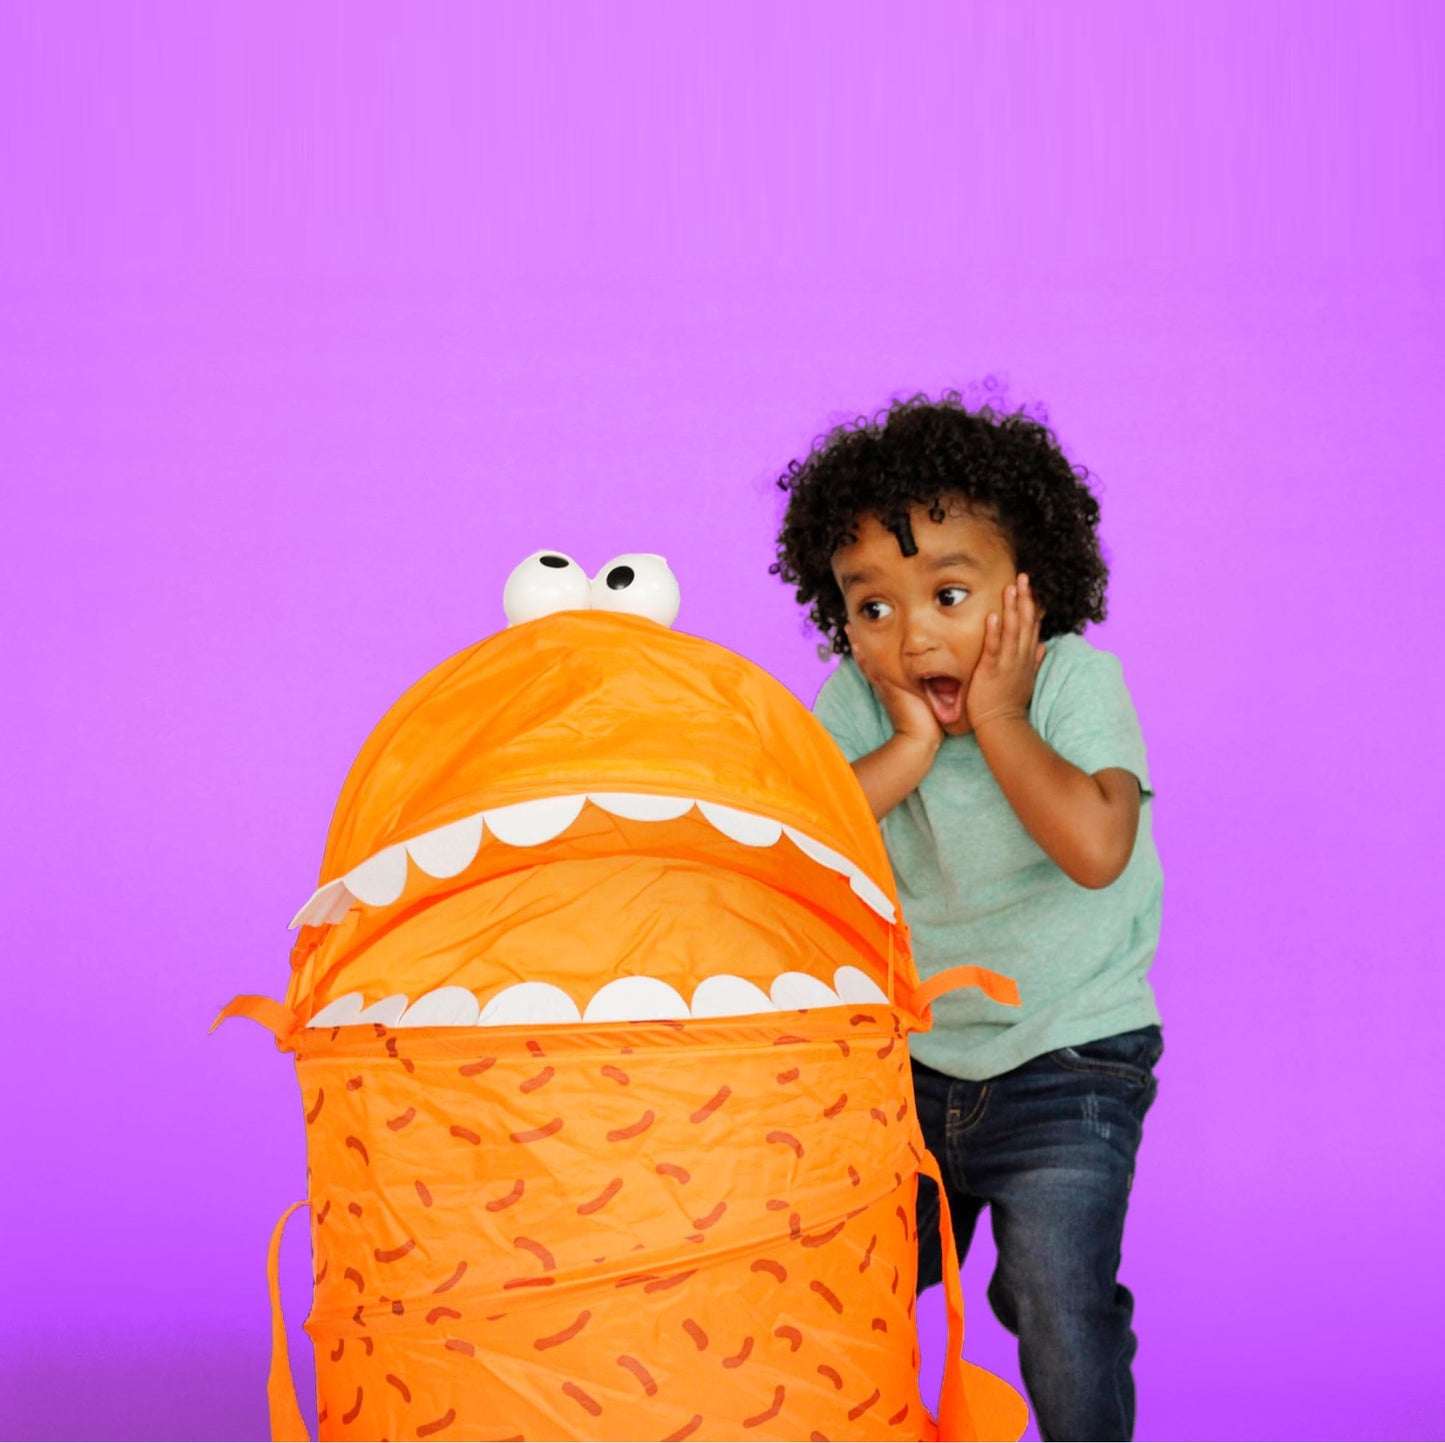 Giant POP-UP Pancake Monster Hilarious Interactive Tactile Game 巨型煎餅怪獸搞笑互動觸覺遊戲